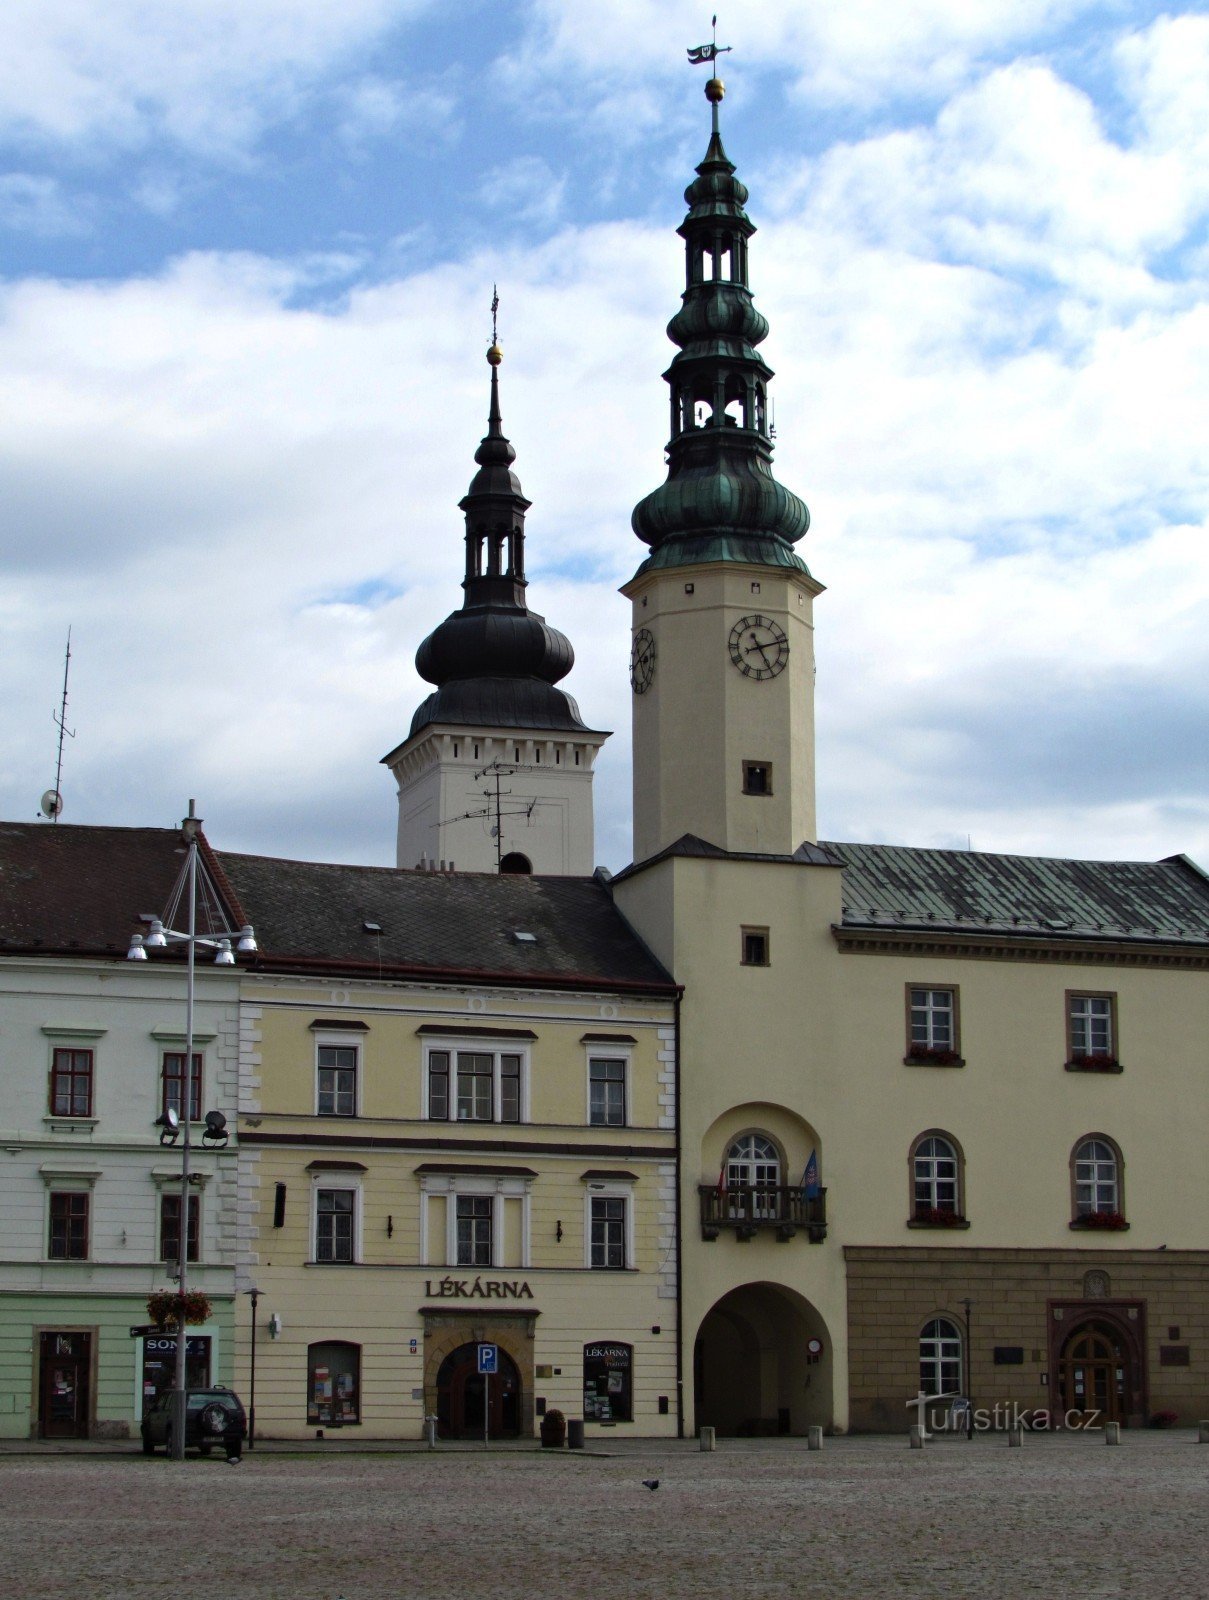 Plaza en Moravská Třebová y un toque del Renacimiento